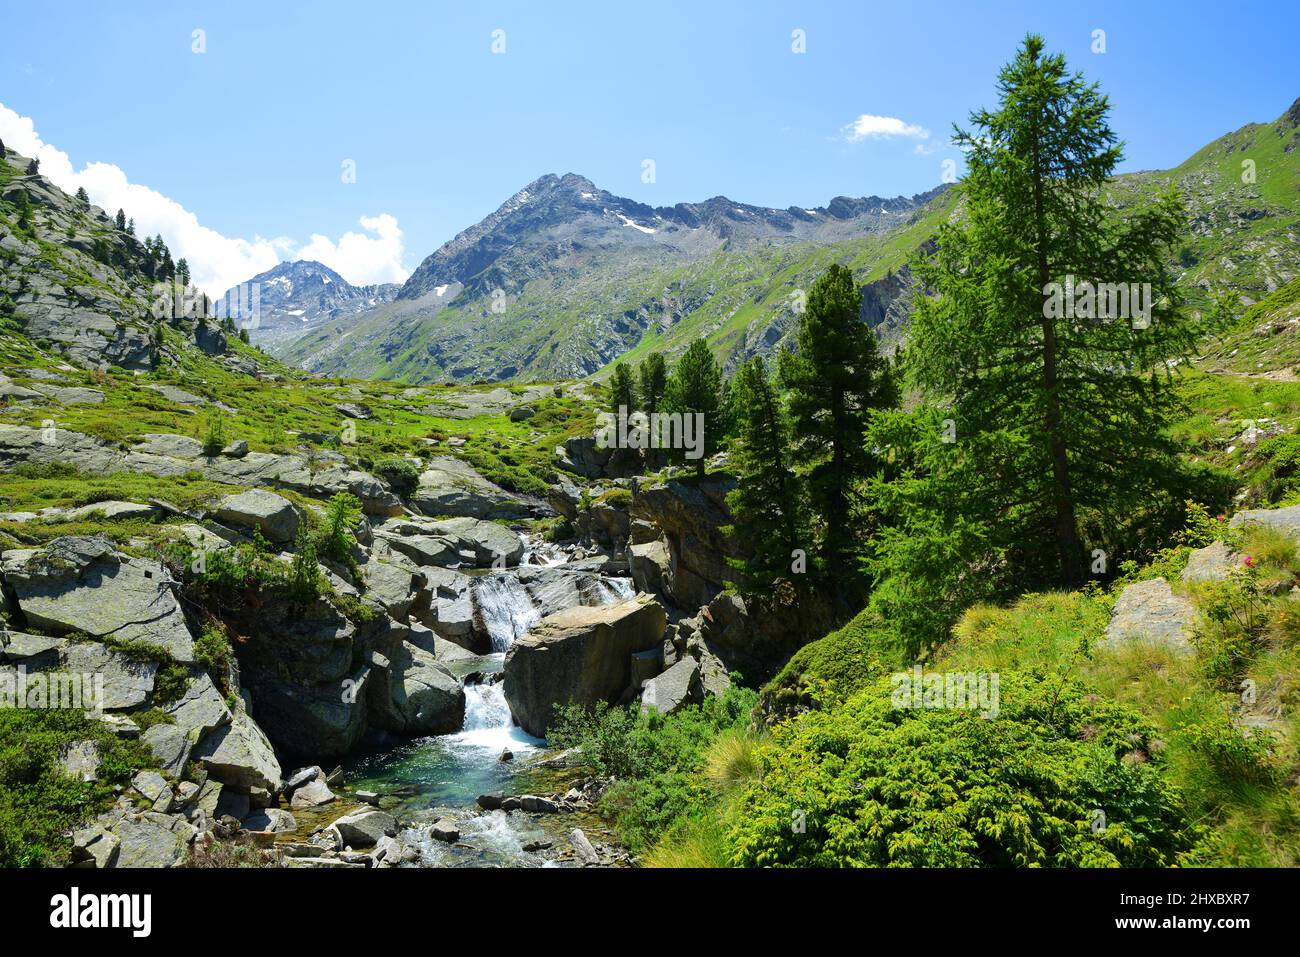 Parco Nazionale del Gran Paradiso. Valle di Bardoney, Valle d'Aosta, Italia. Bel paesaggio di montagna in giornata di sole. Foto Stock